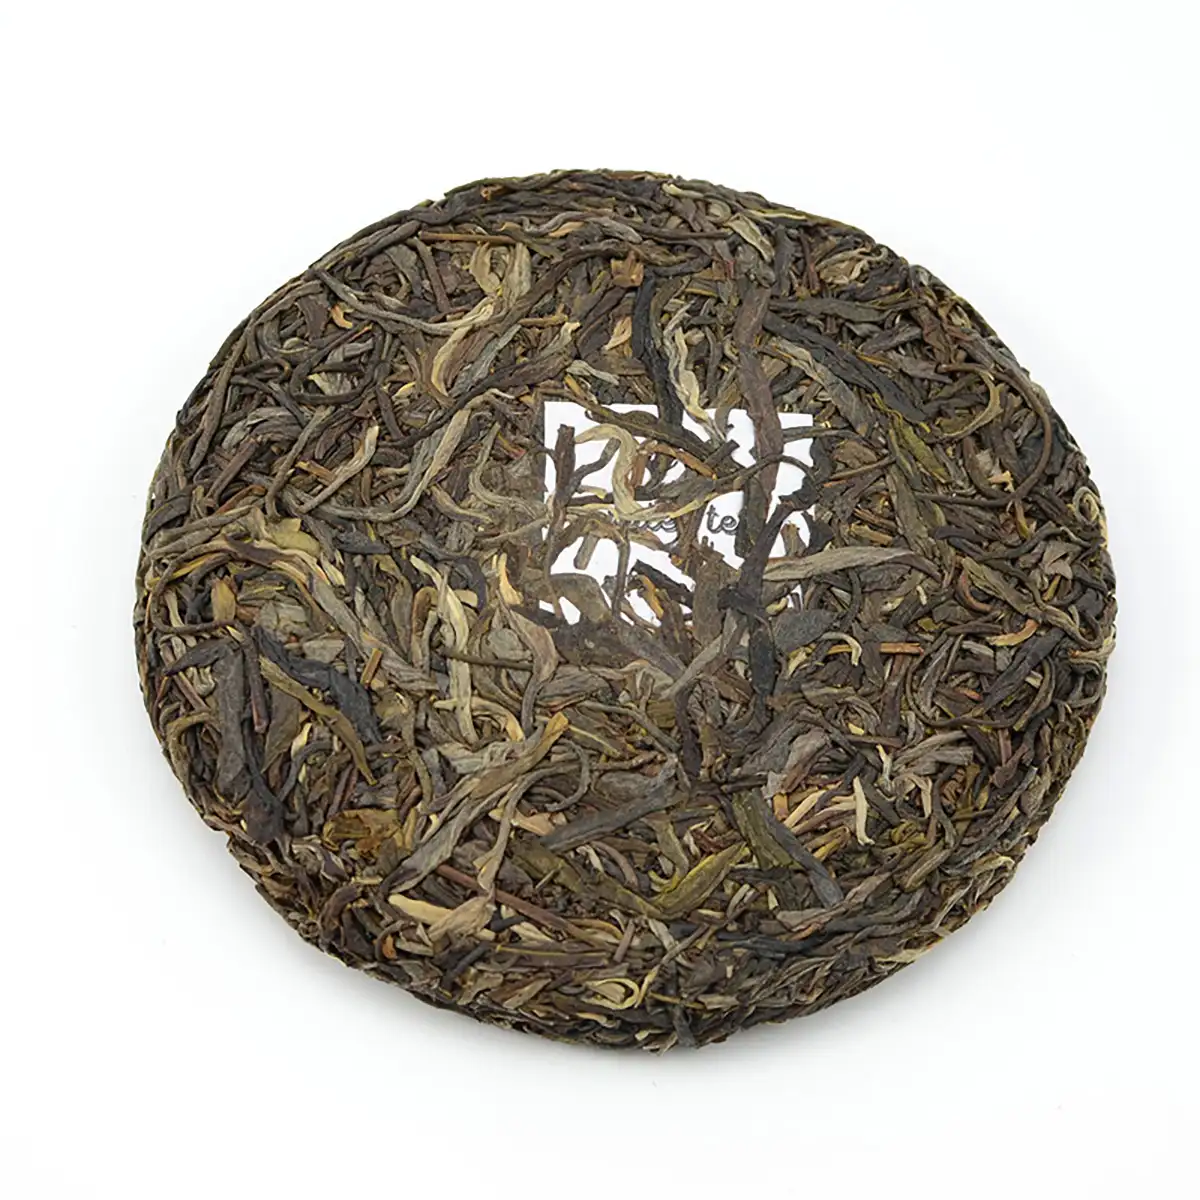 Tea CERES Certified Yunnan Puer Tea Brands Fermented Puerh Tea Private Label Old Puer Tea